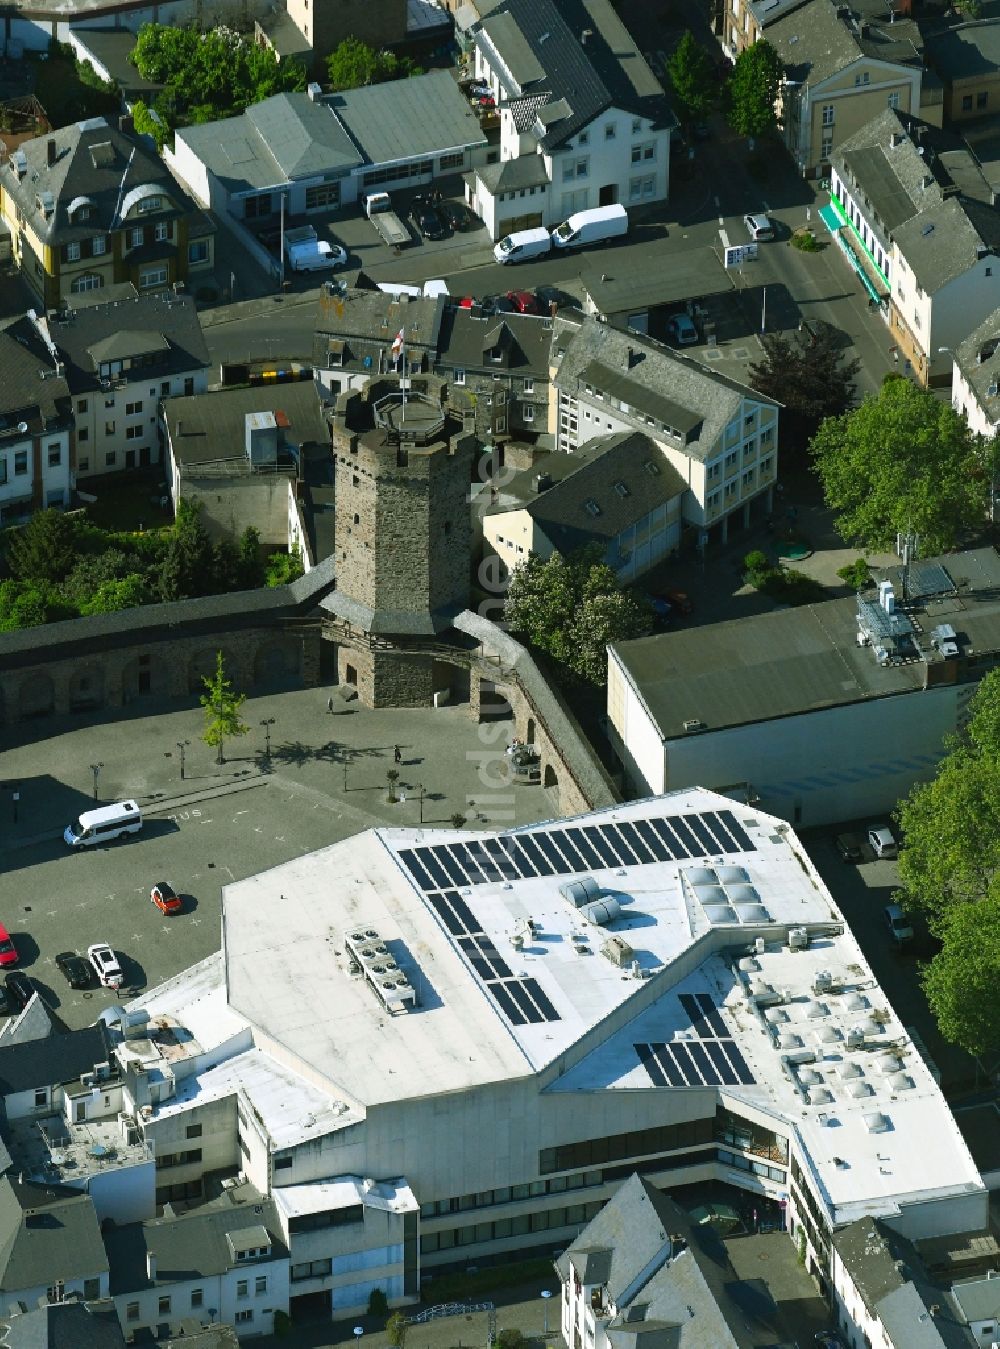 Luftaufnahme Lahnstein - Veranstaltungshalle Stadthalle Lahnstein am Salhofplatz in Lahnstein im Bundesland Rheinland-Pfalz, Deutschland